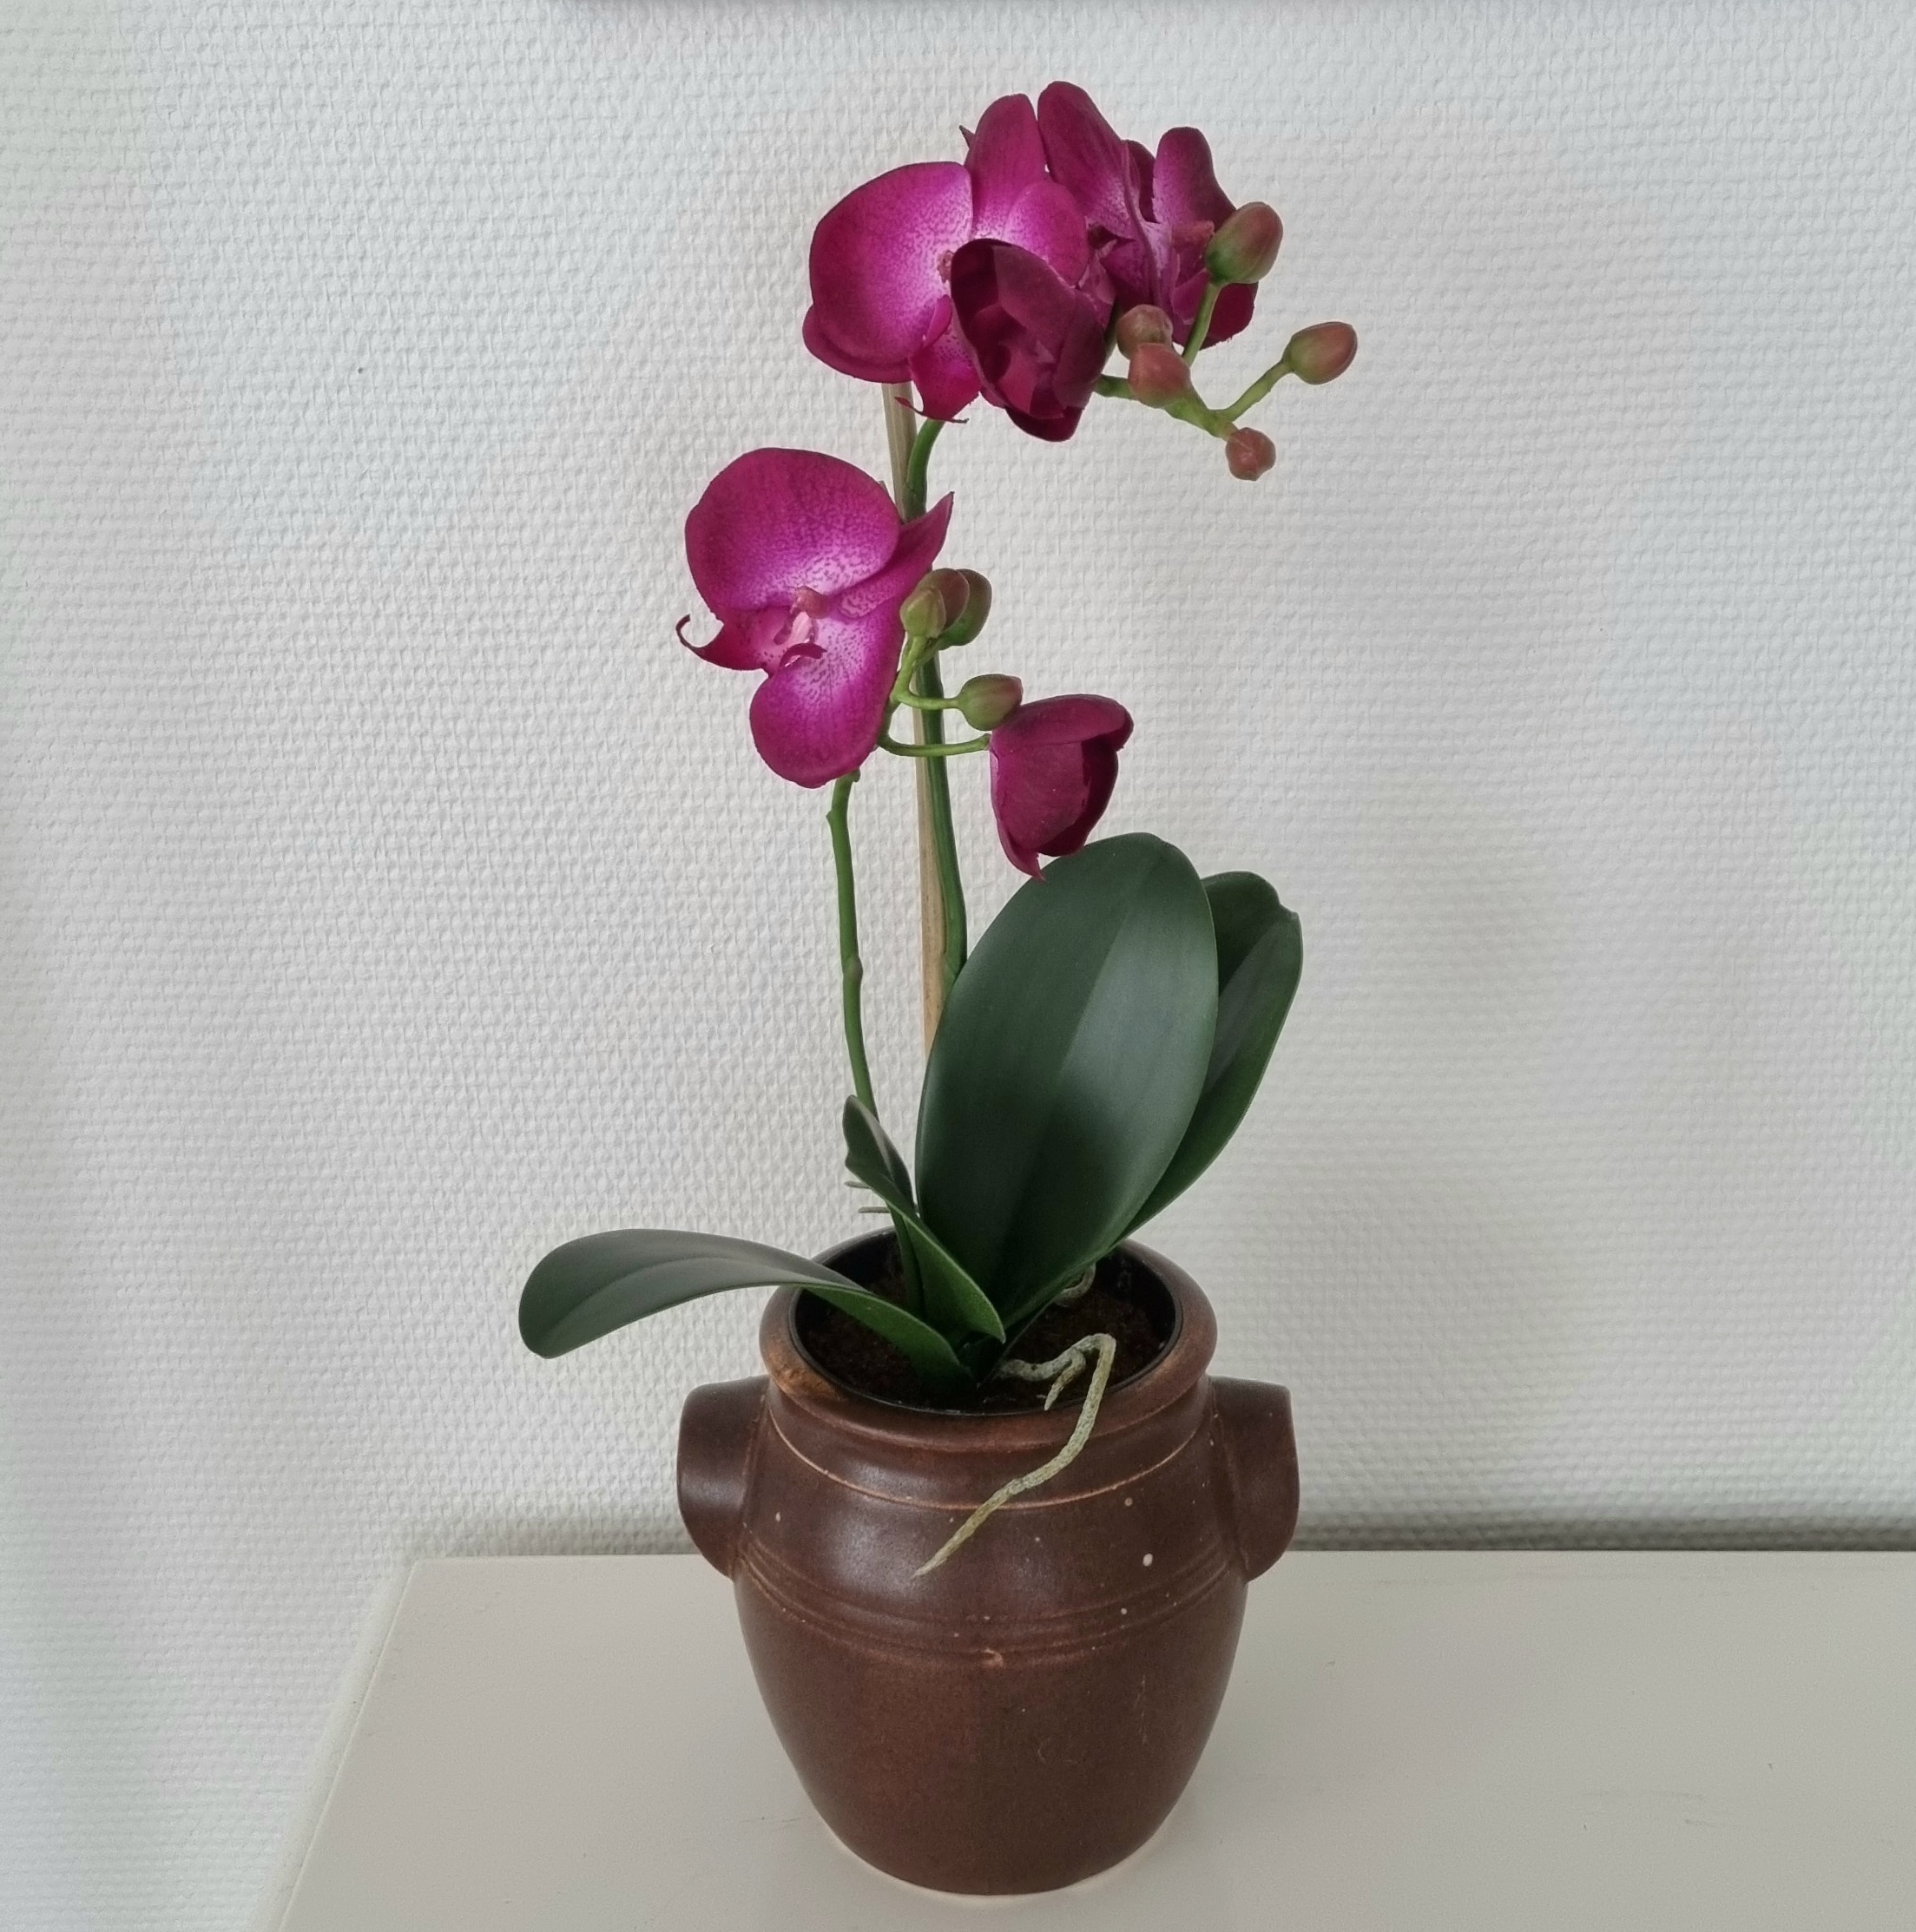 Orkidé cerise 2-grenet med flotte blomster